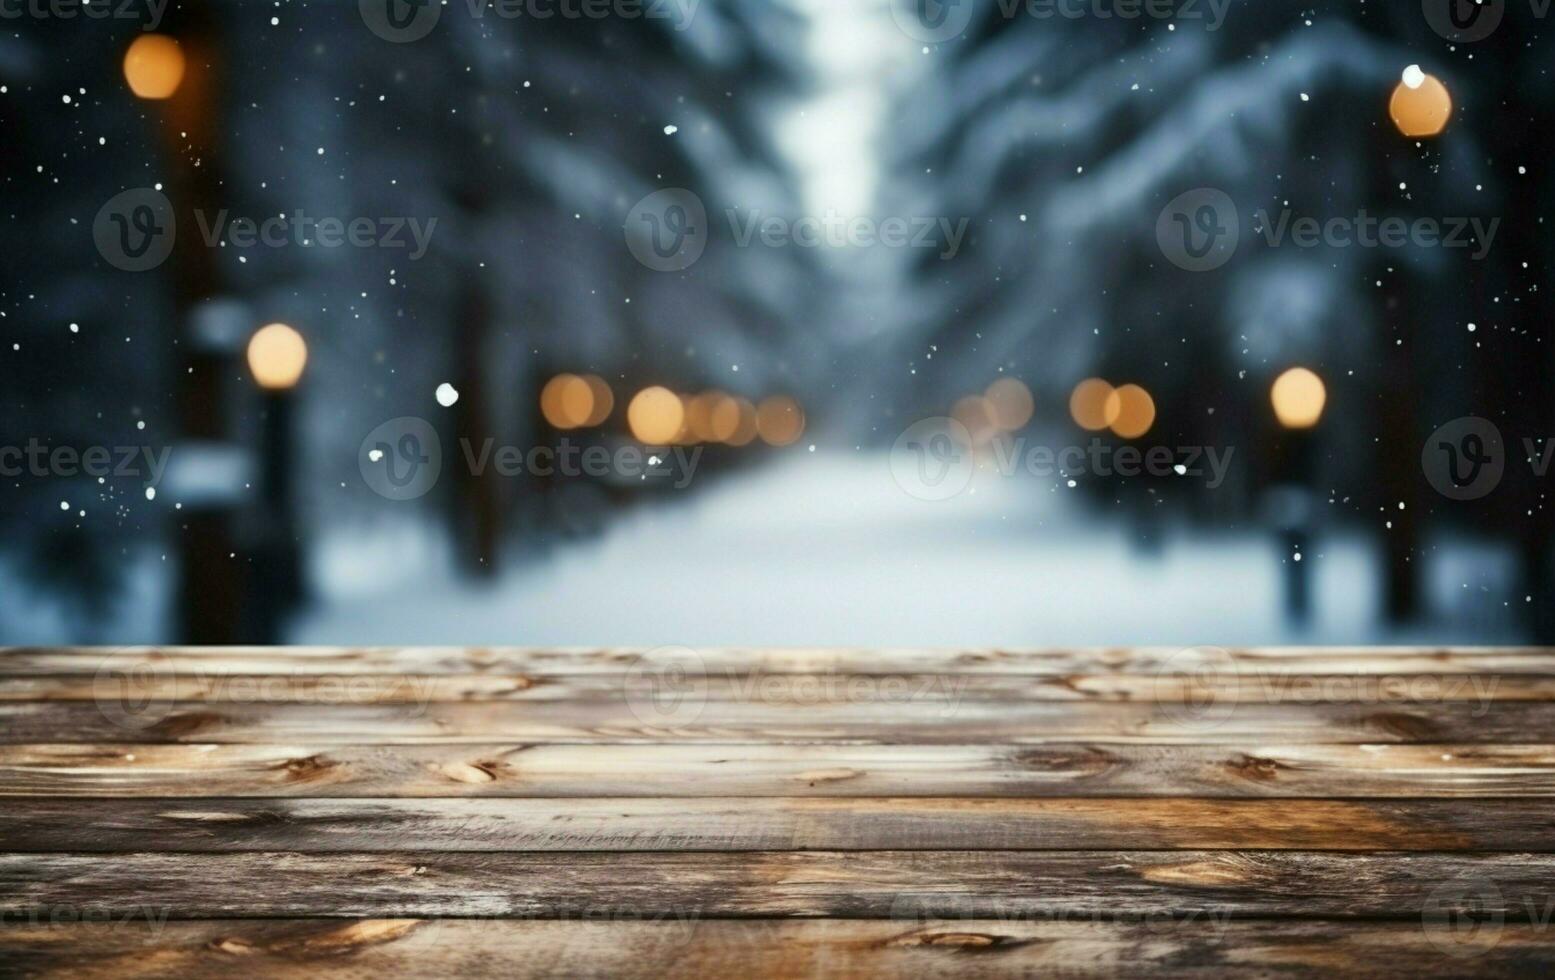 ai gerado esvaziar inverno madeira prancha borda mesa com queda de neve ai gerado foto